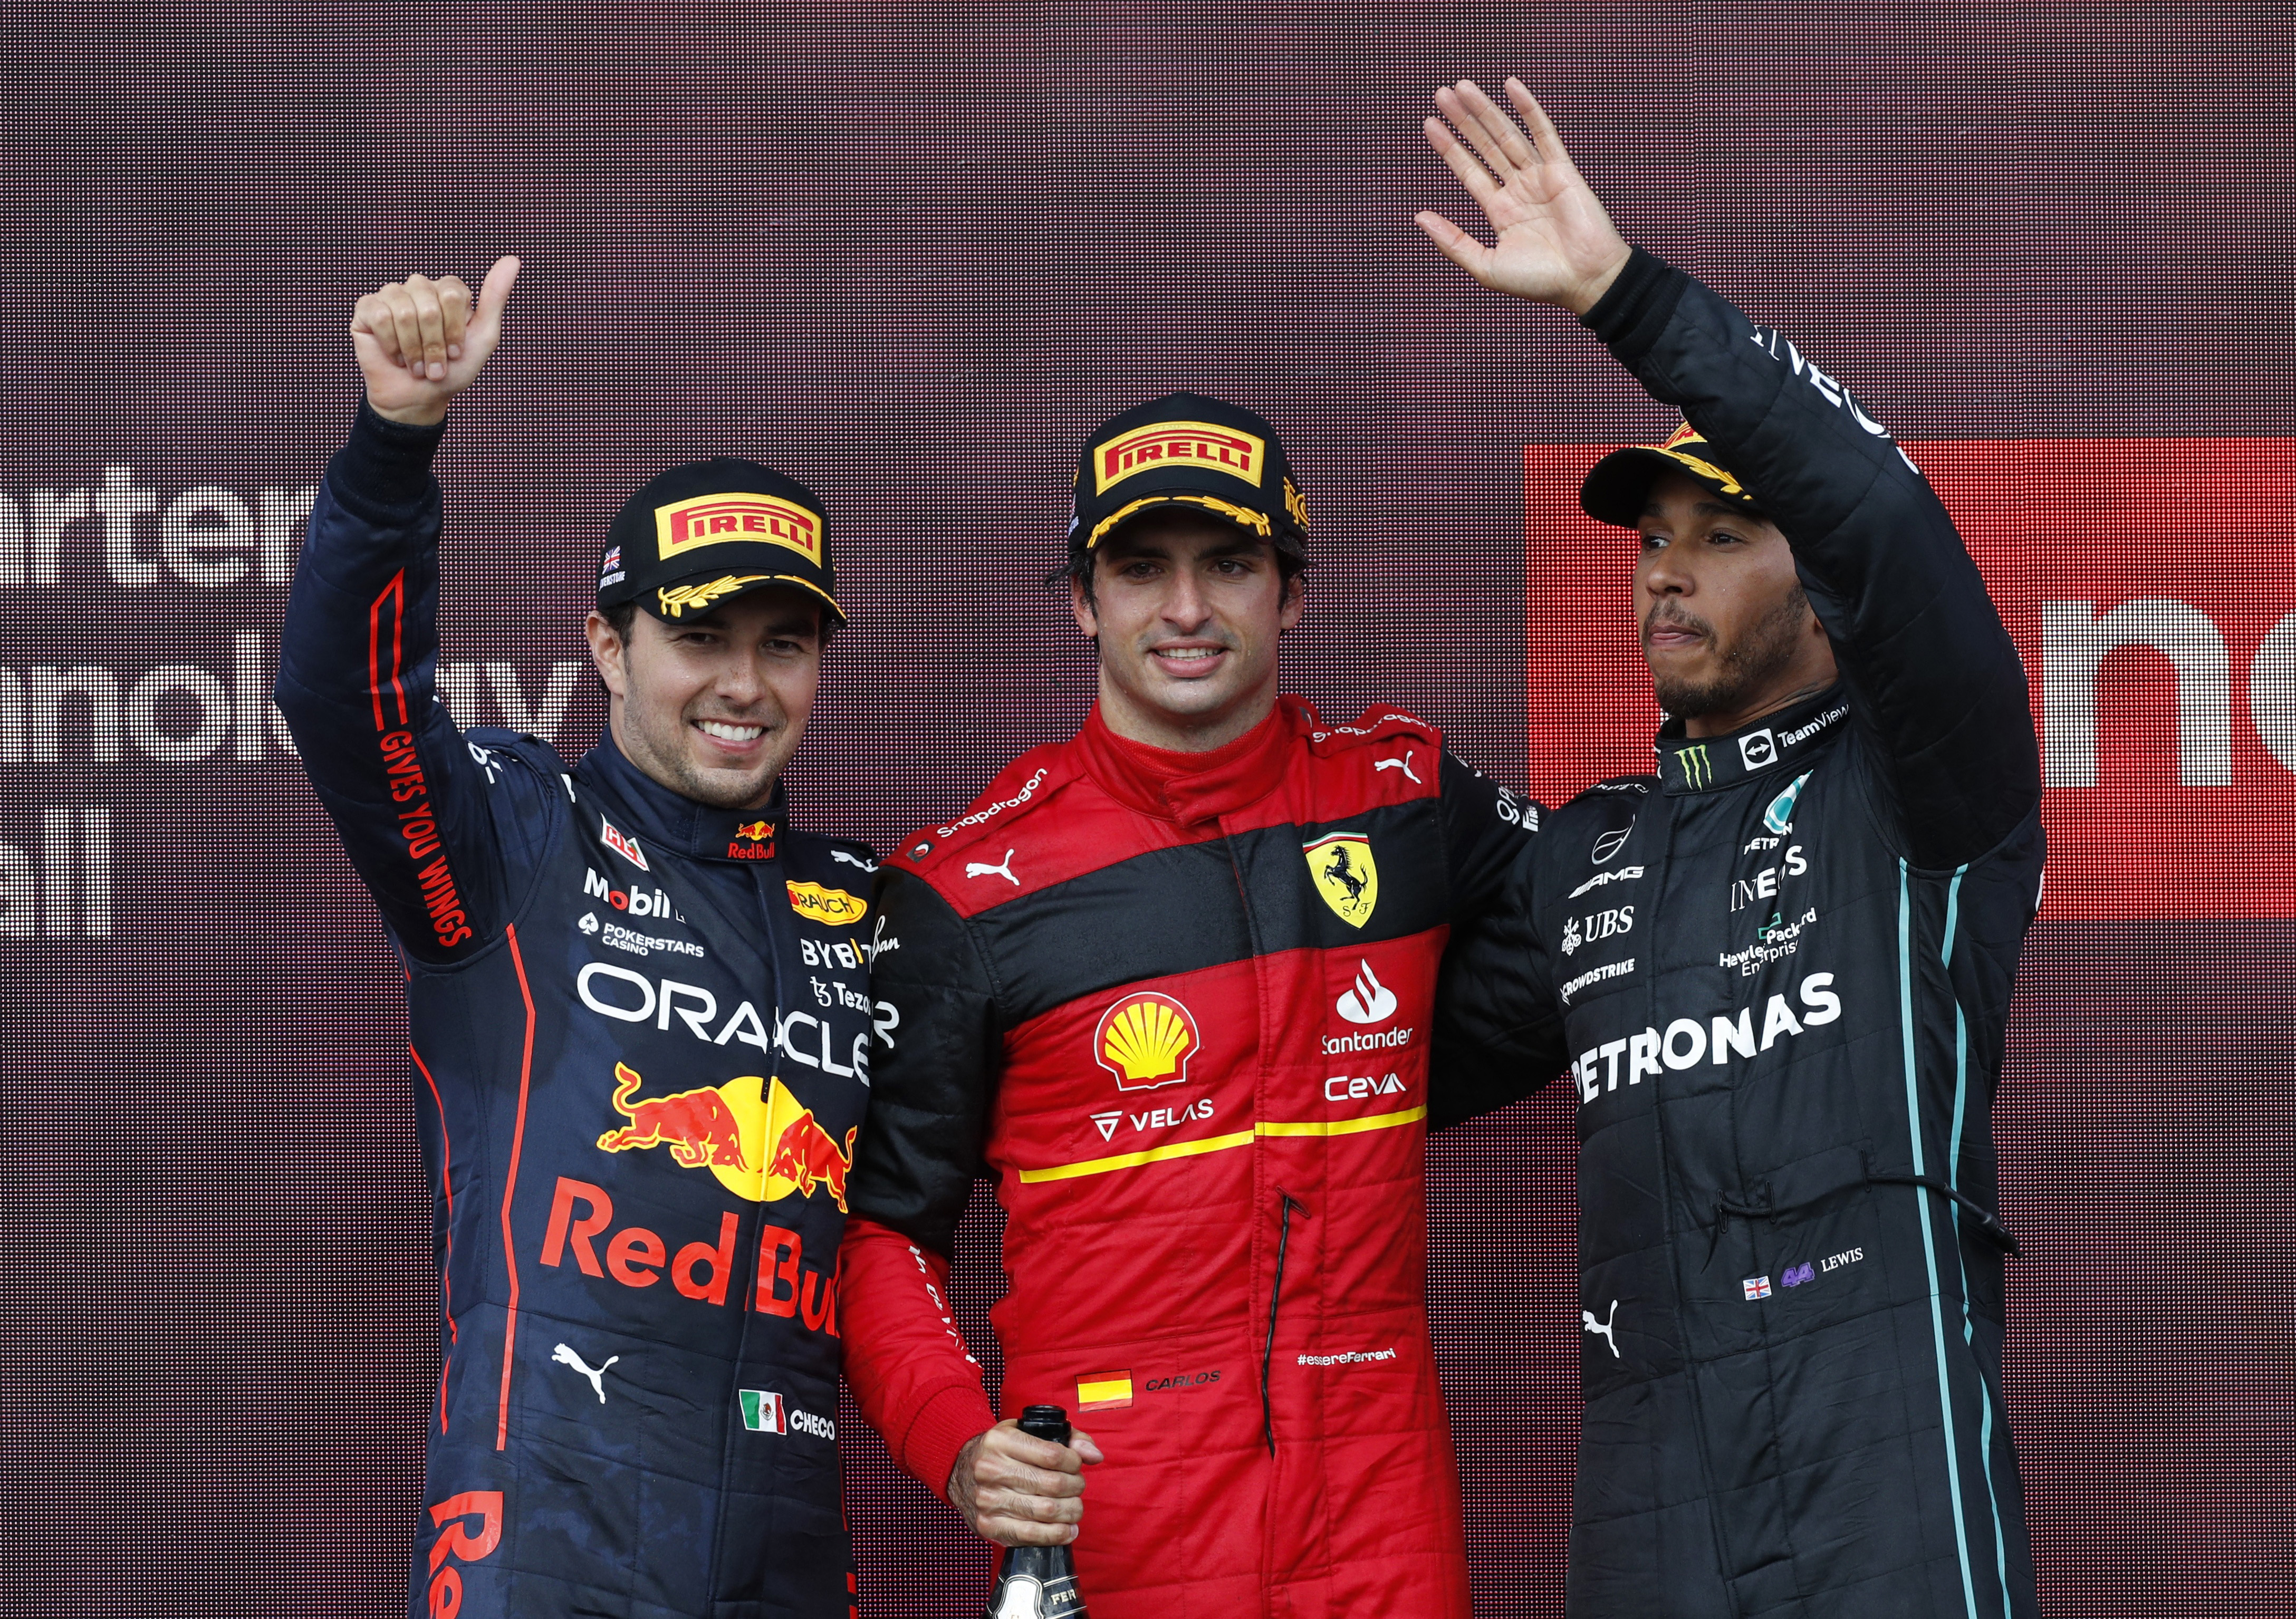 Carlos Sainz ganó su primera carrera en la Fórmula 1, seguido por Checo Pérez, quien remontó 15 lugares y Lewis Hamilton, quien regresó al podio (Foto: REUTERS/Andrew Boyers)